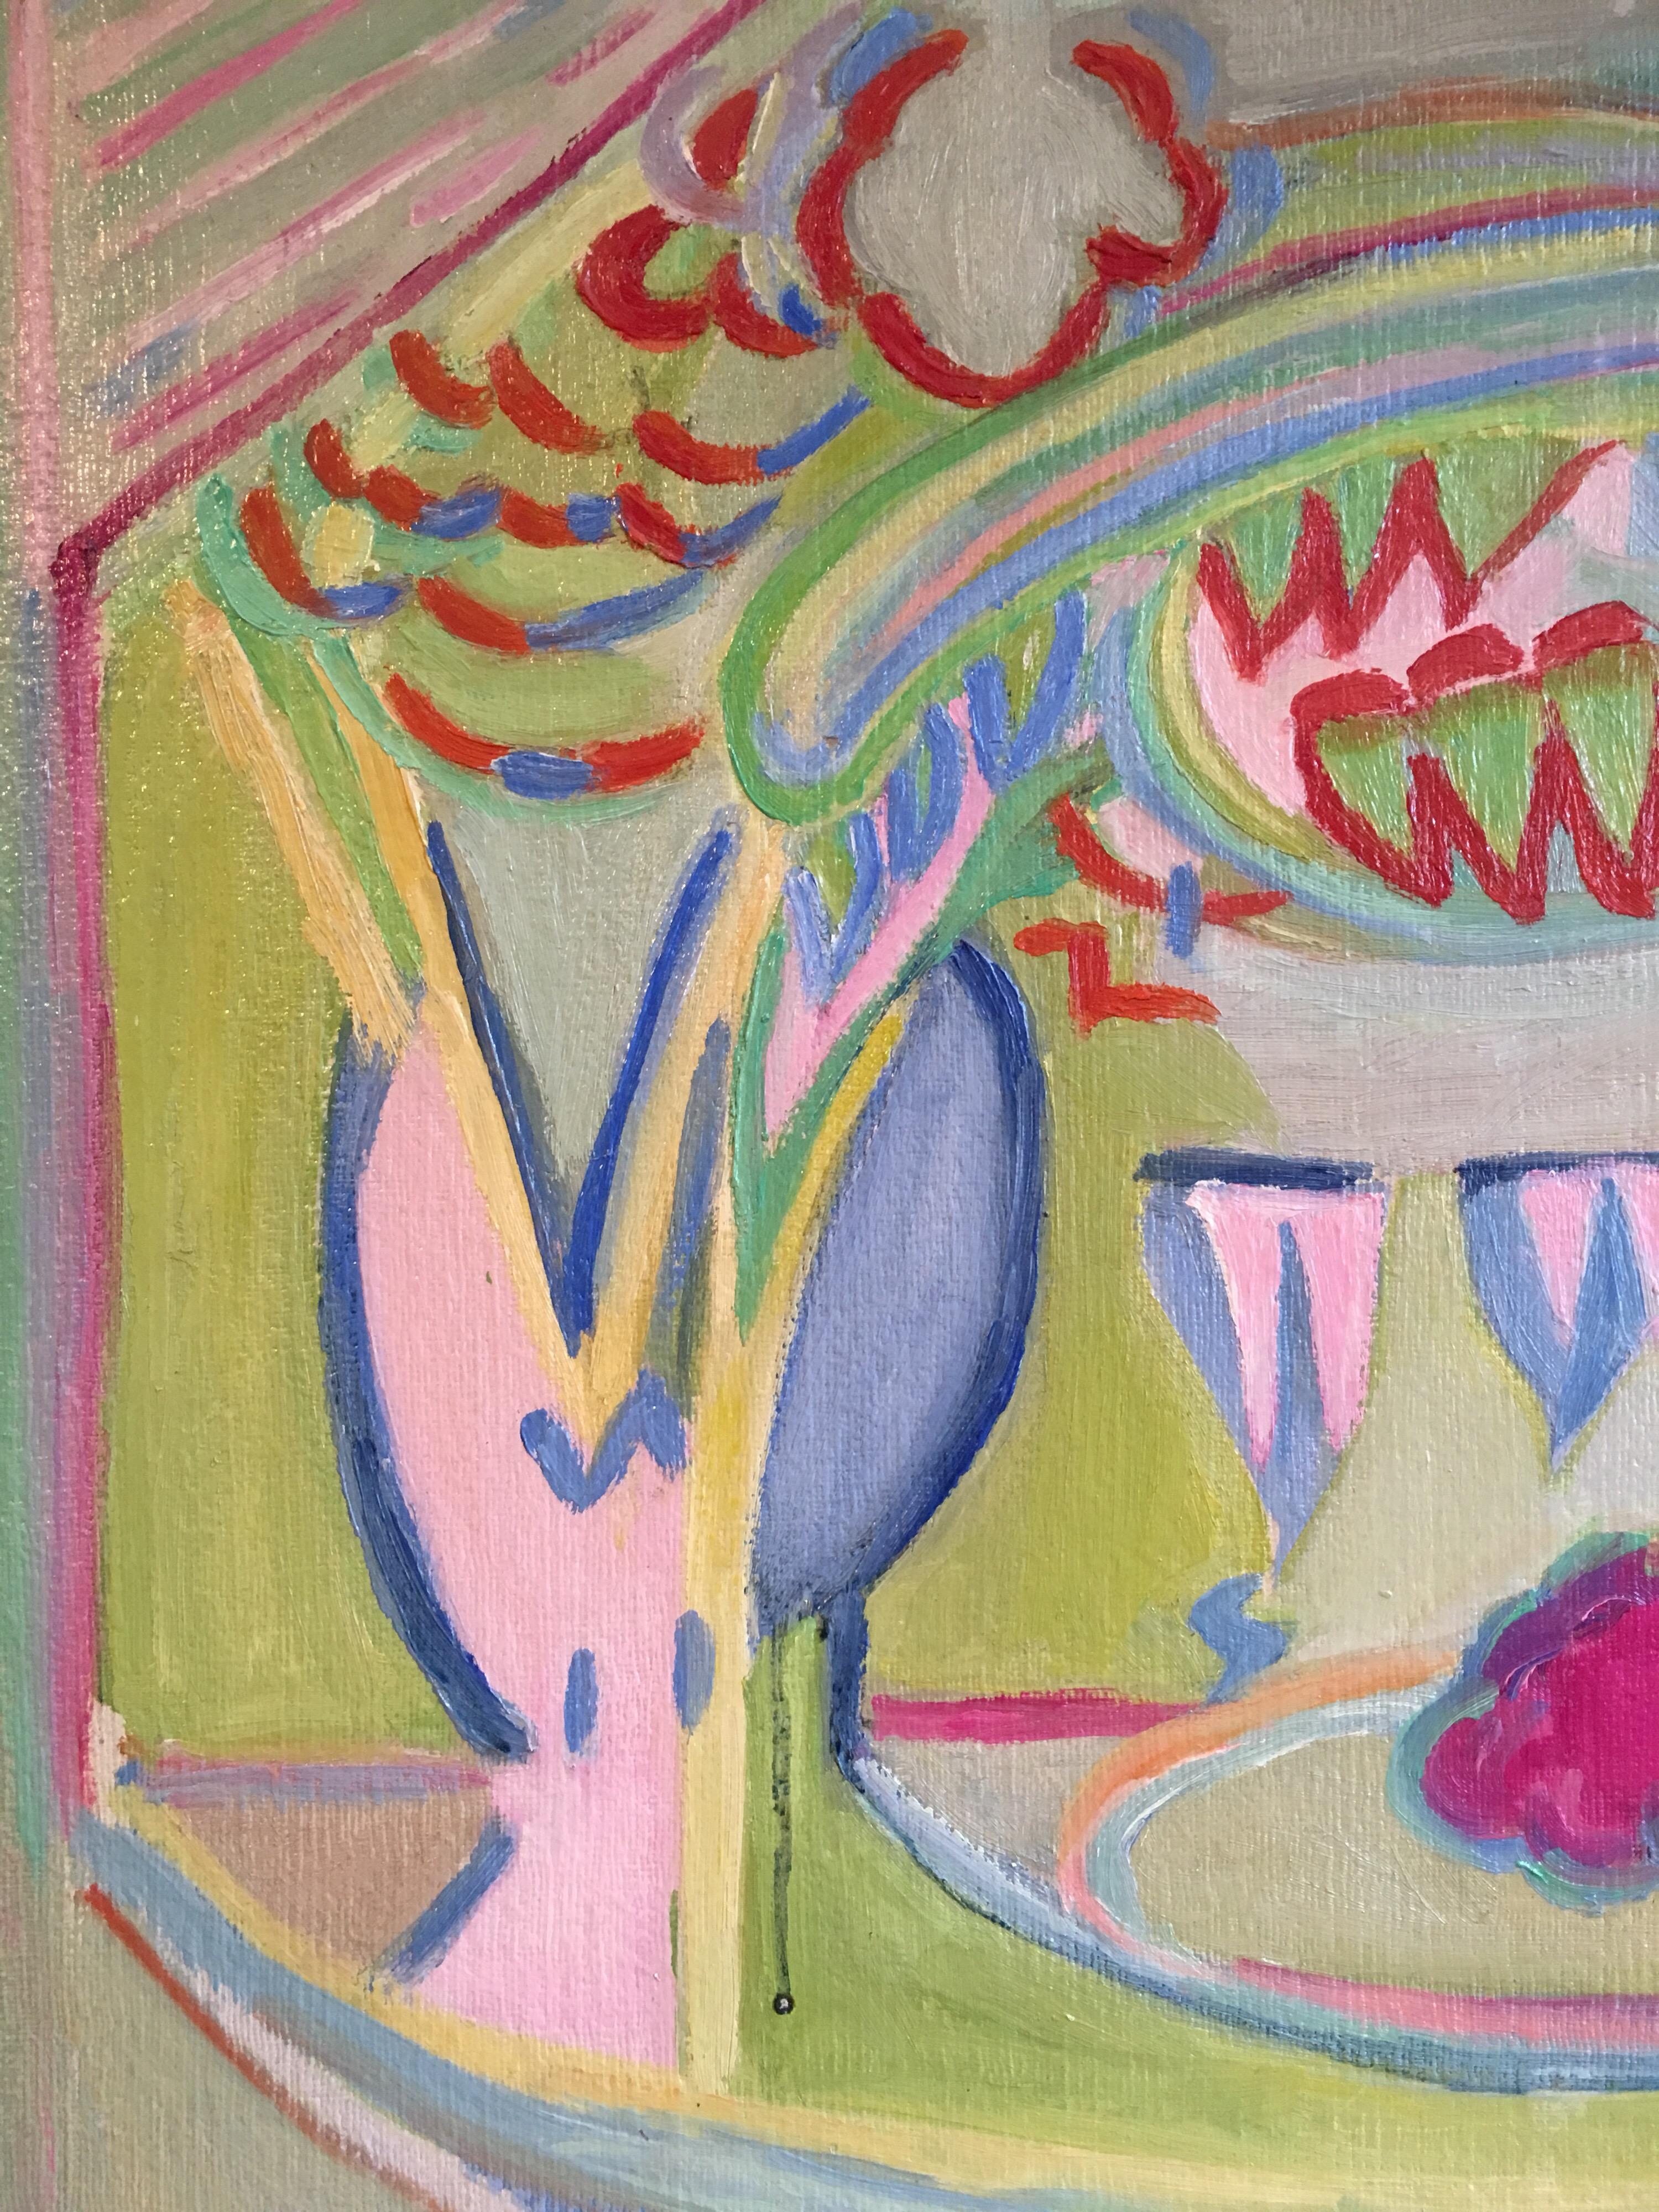 verni
Par l'artiste française, Suzanne Vattier, 1901-1996
Signé par l'artiste dans le coin inférieur droit
Peinture à l'huile sur carton, encadrée
Taille du cadre : 19 x 22 pouces

Fabuleuse peinture à l'huile abstraite des années 1970. Les couleurs